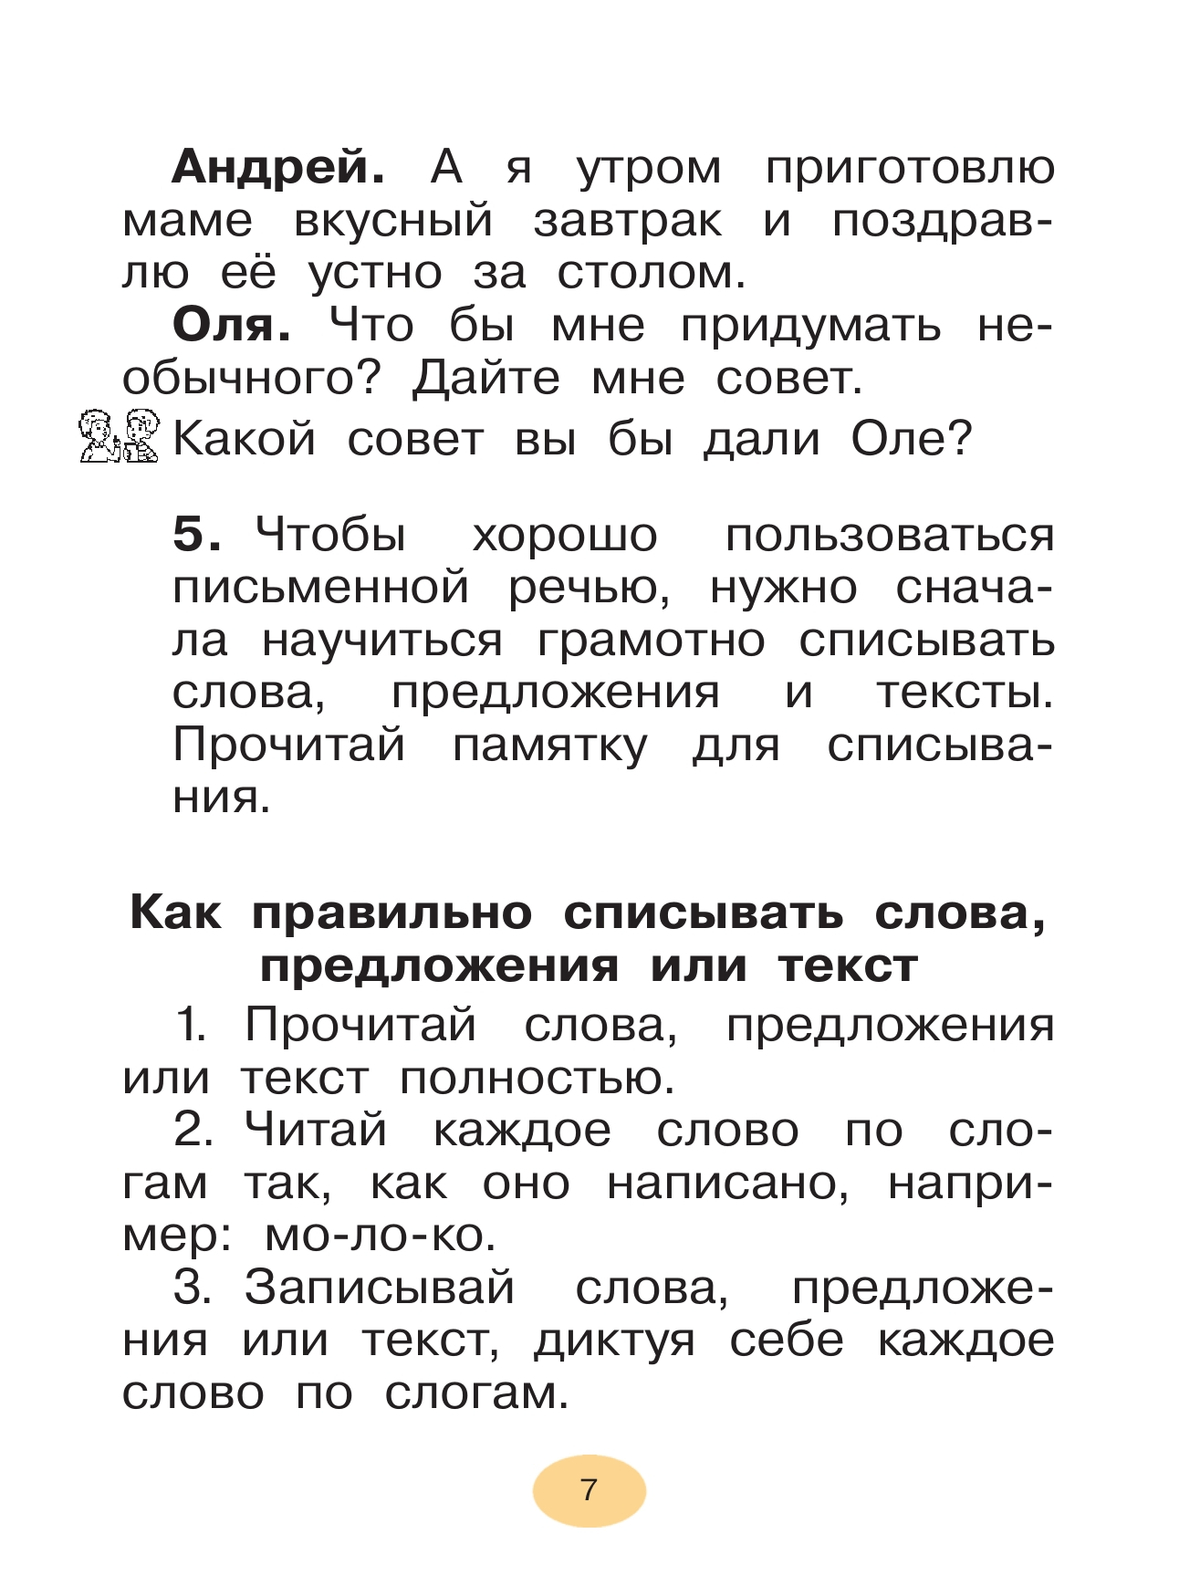 Русский язык. 1 класс. Учебное пособие 4